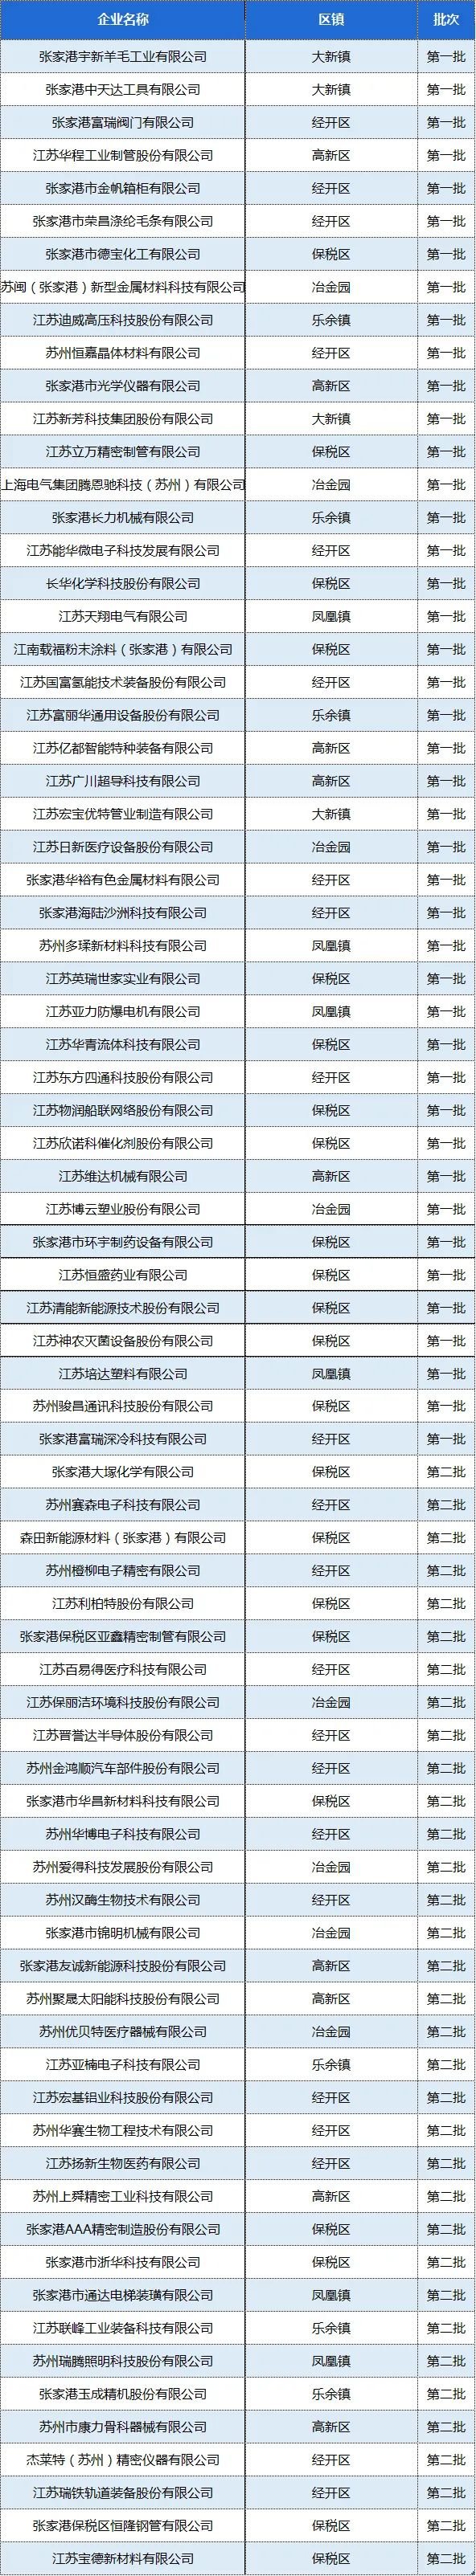 苏州张家港77家企业入围江苏省2022年专精特新中小企业